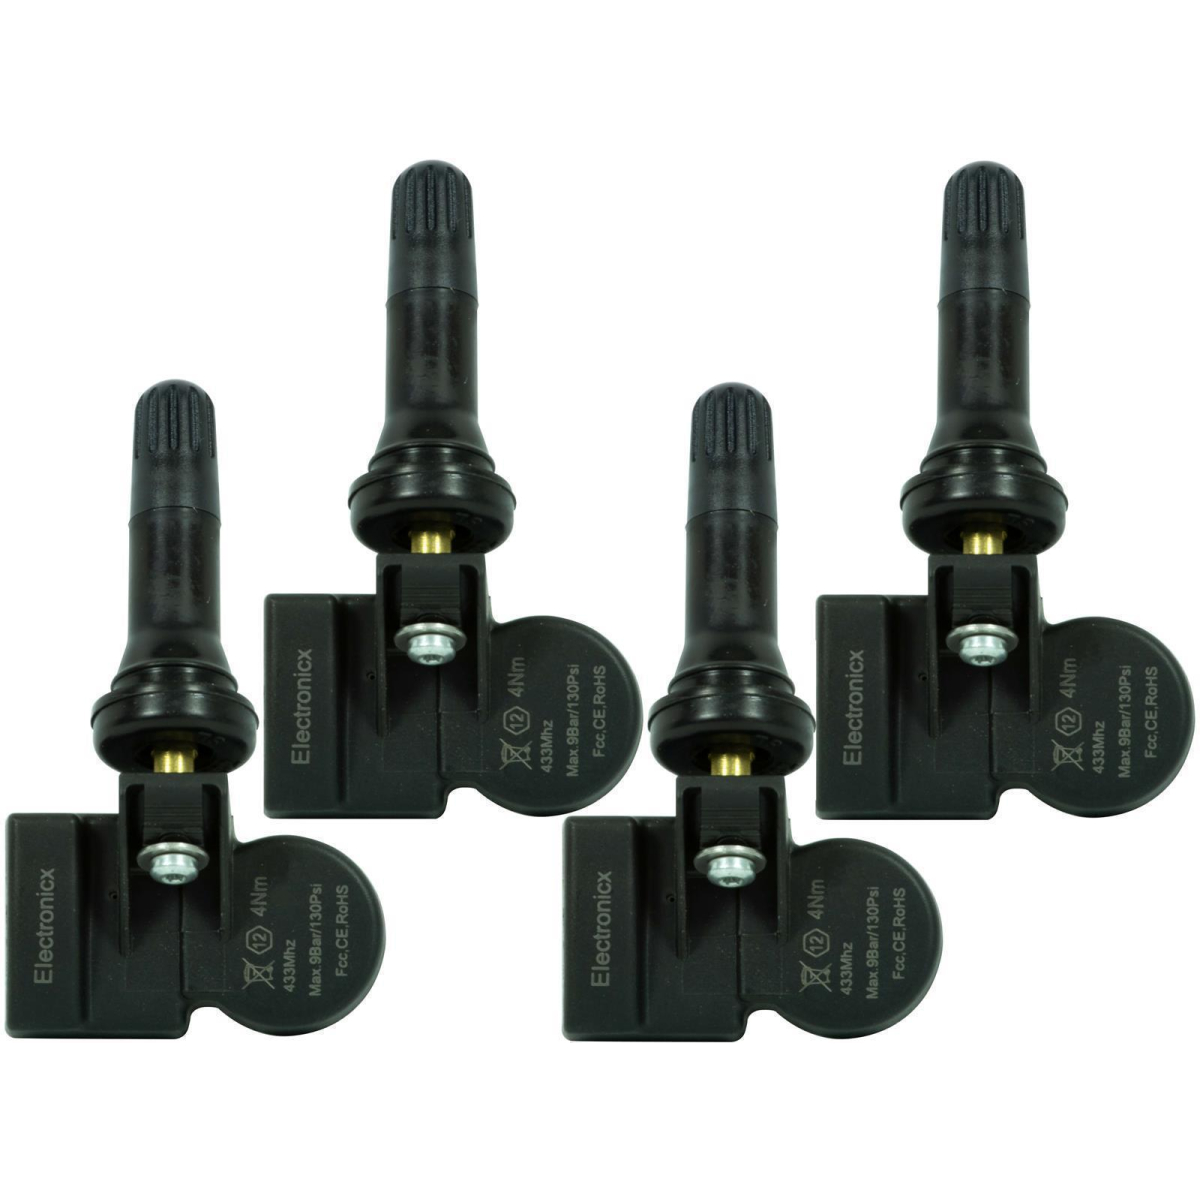 4 tire pressure sensors rdks sensors rubber valve for Ford Kuga CBS 11.2012-12.2020